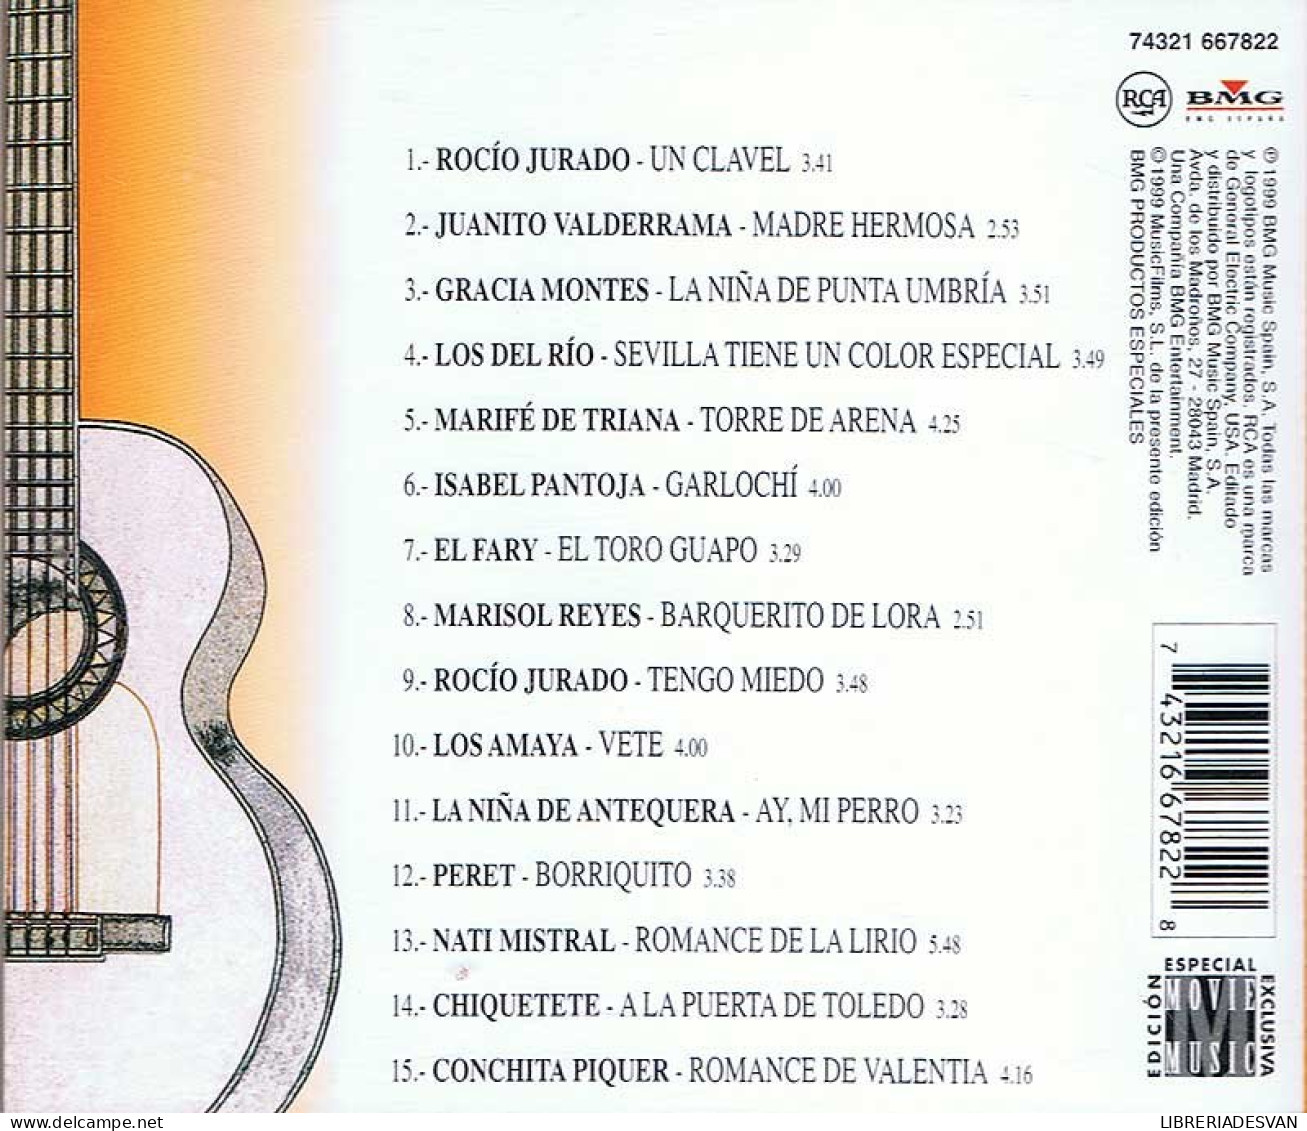 Arte Y Sentimiento 2. Rocío Jurado. Juanito Valderrama... CD - Autres - Musique Espagnole